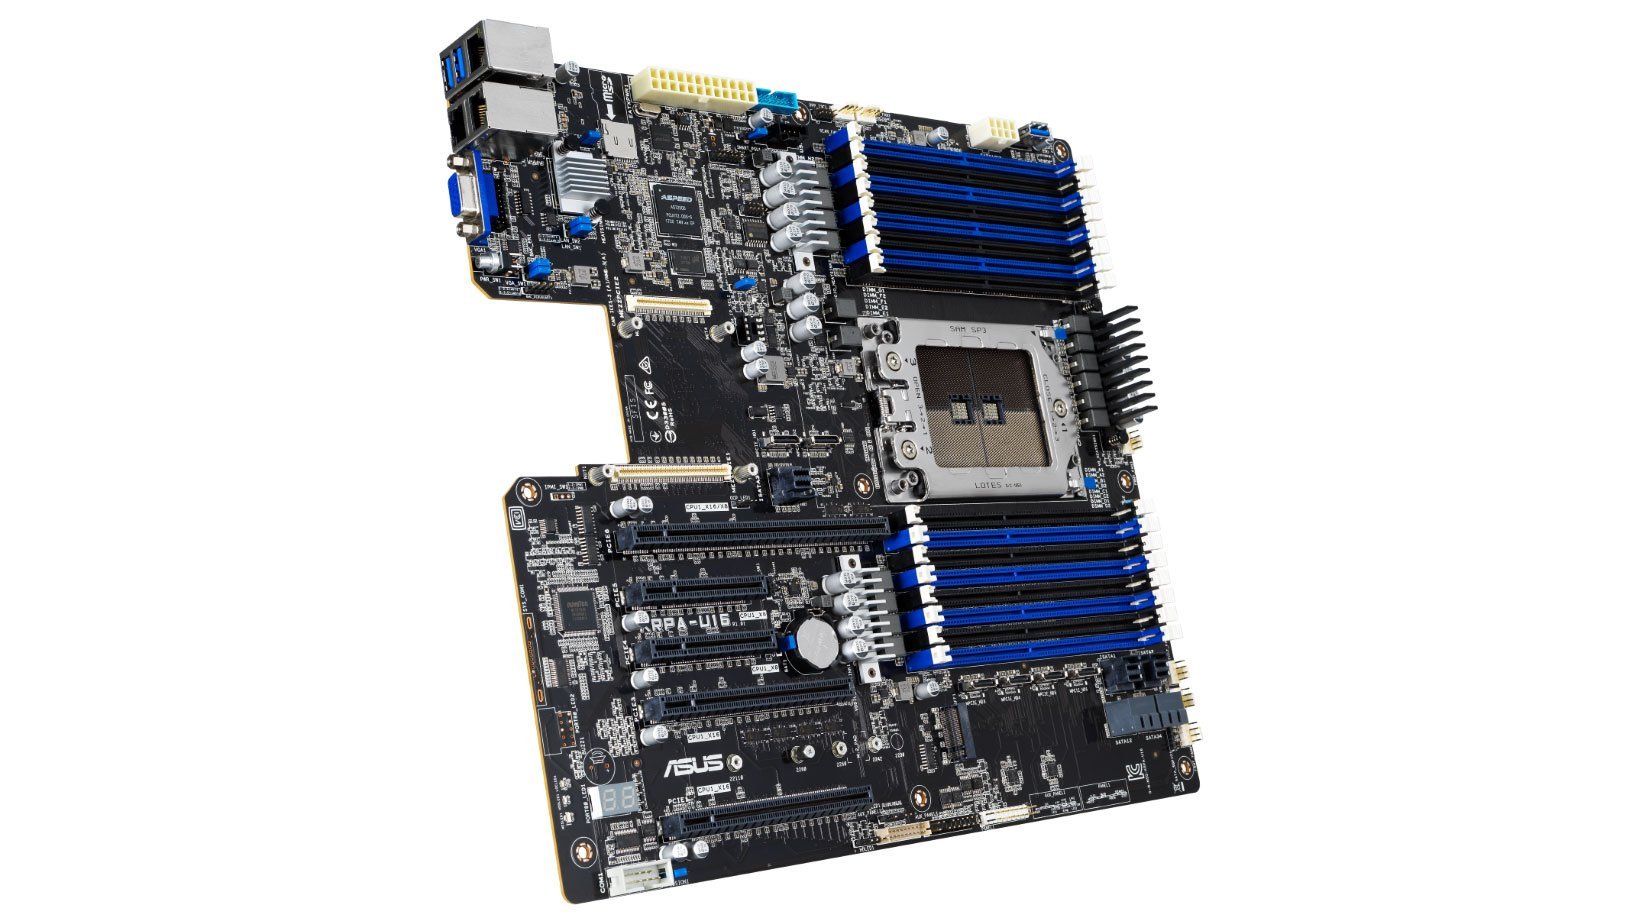 ASUS-KRPA-U16-server-motherboard-supports-AMD-EPYC-7002-series-processors.jpg